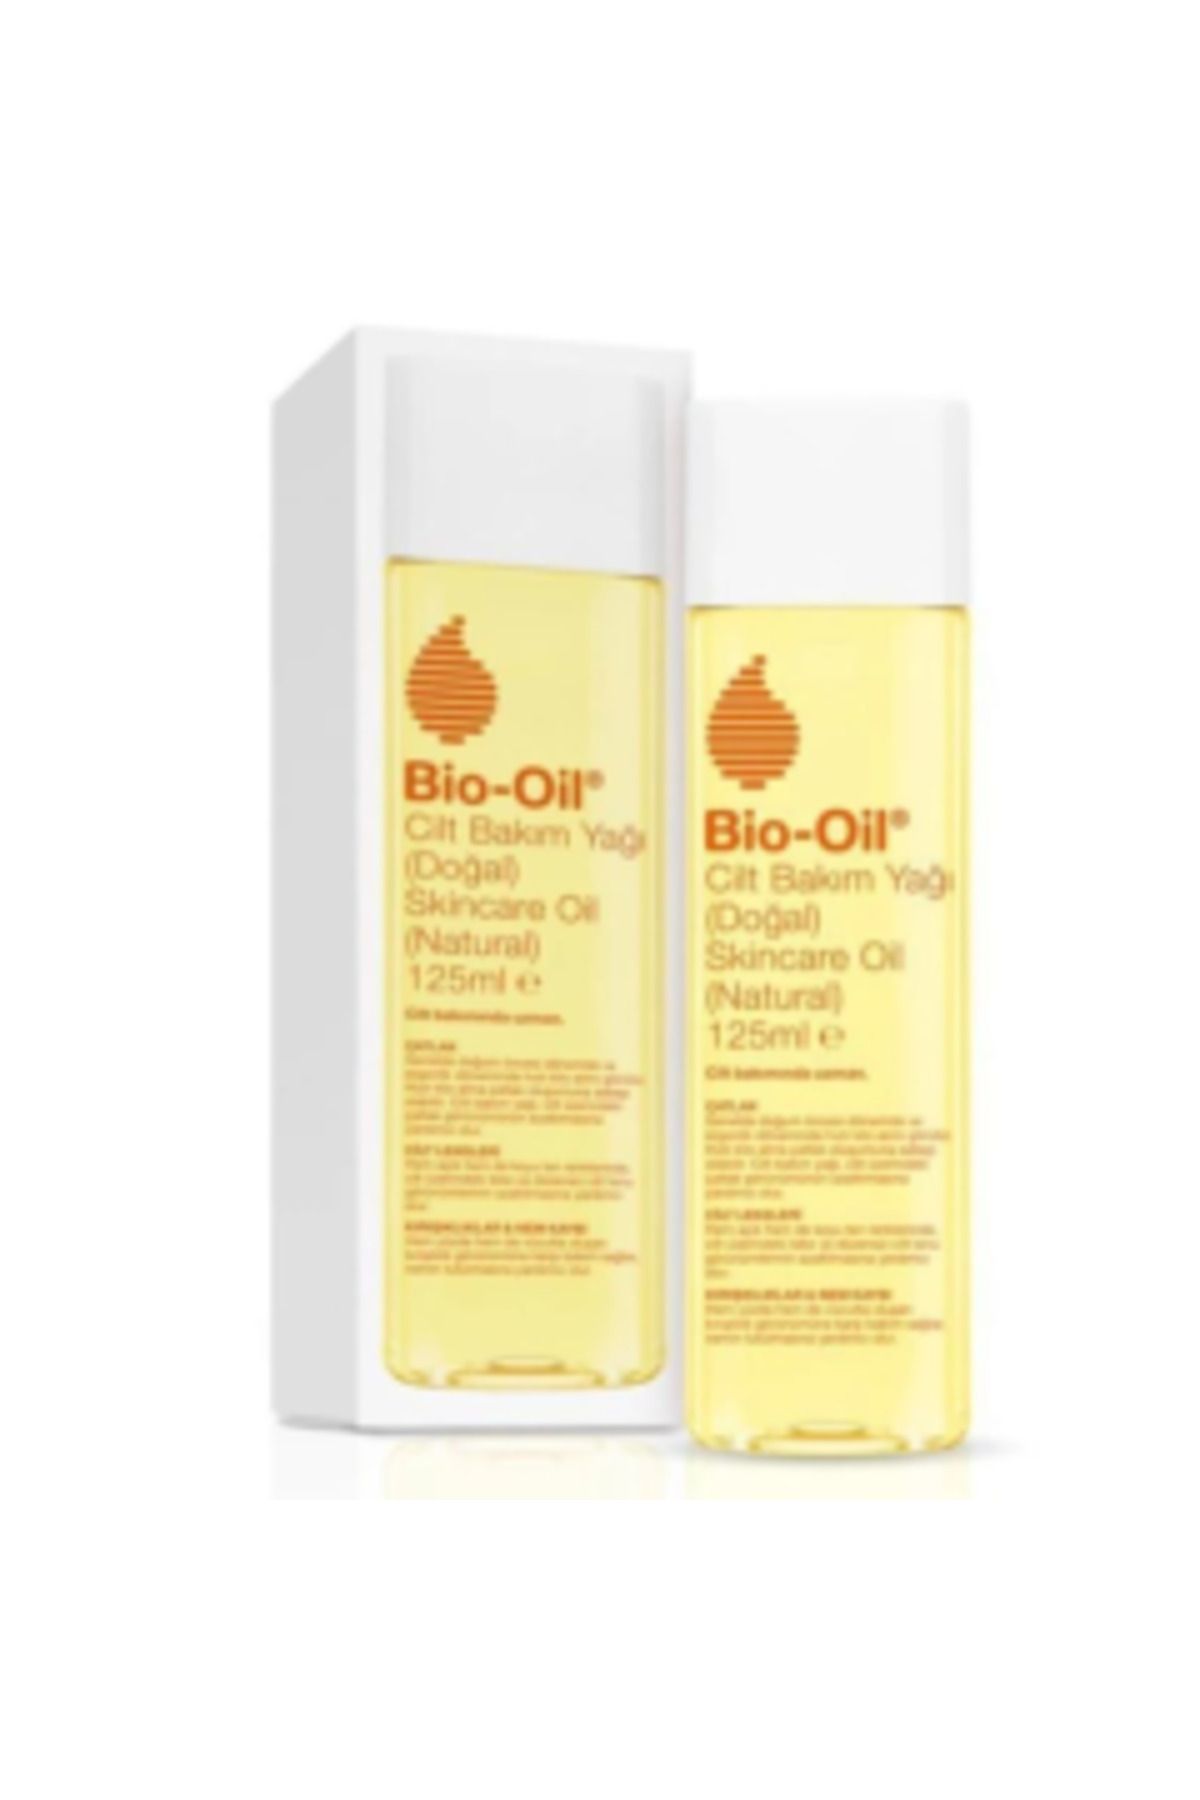 Bio -Oil Natural Cilt Bakım Yağı 125 ml ( 1 ADET )